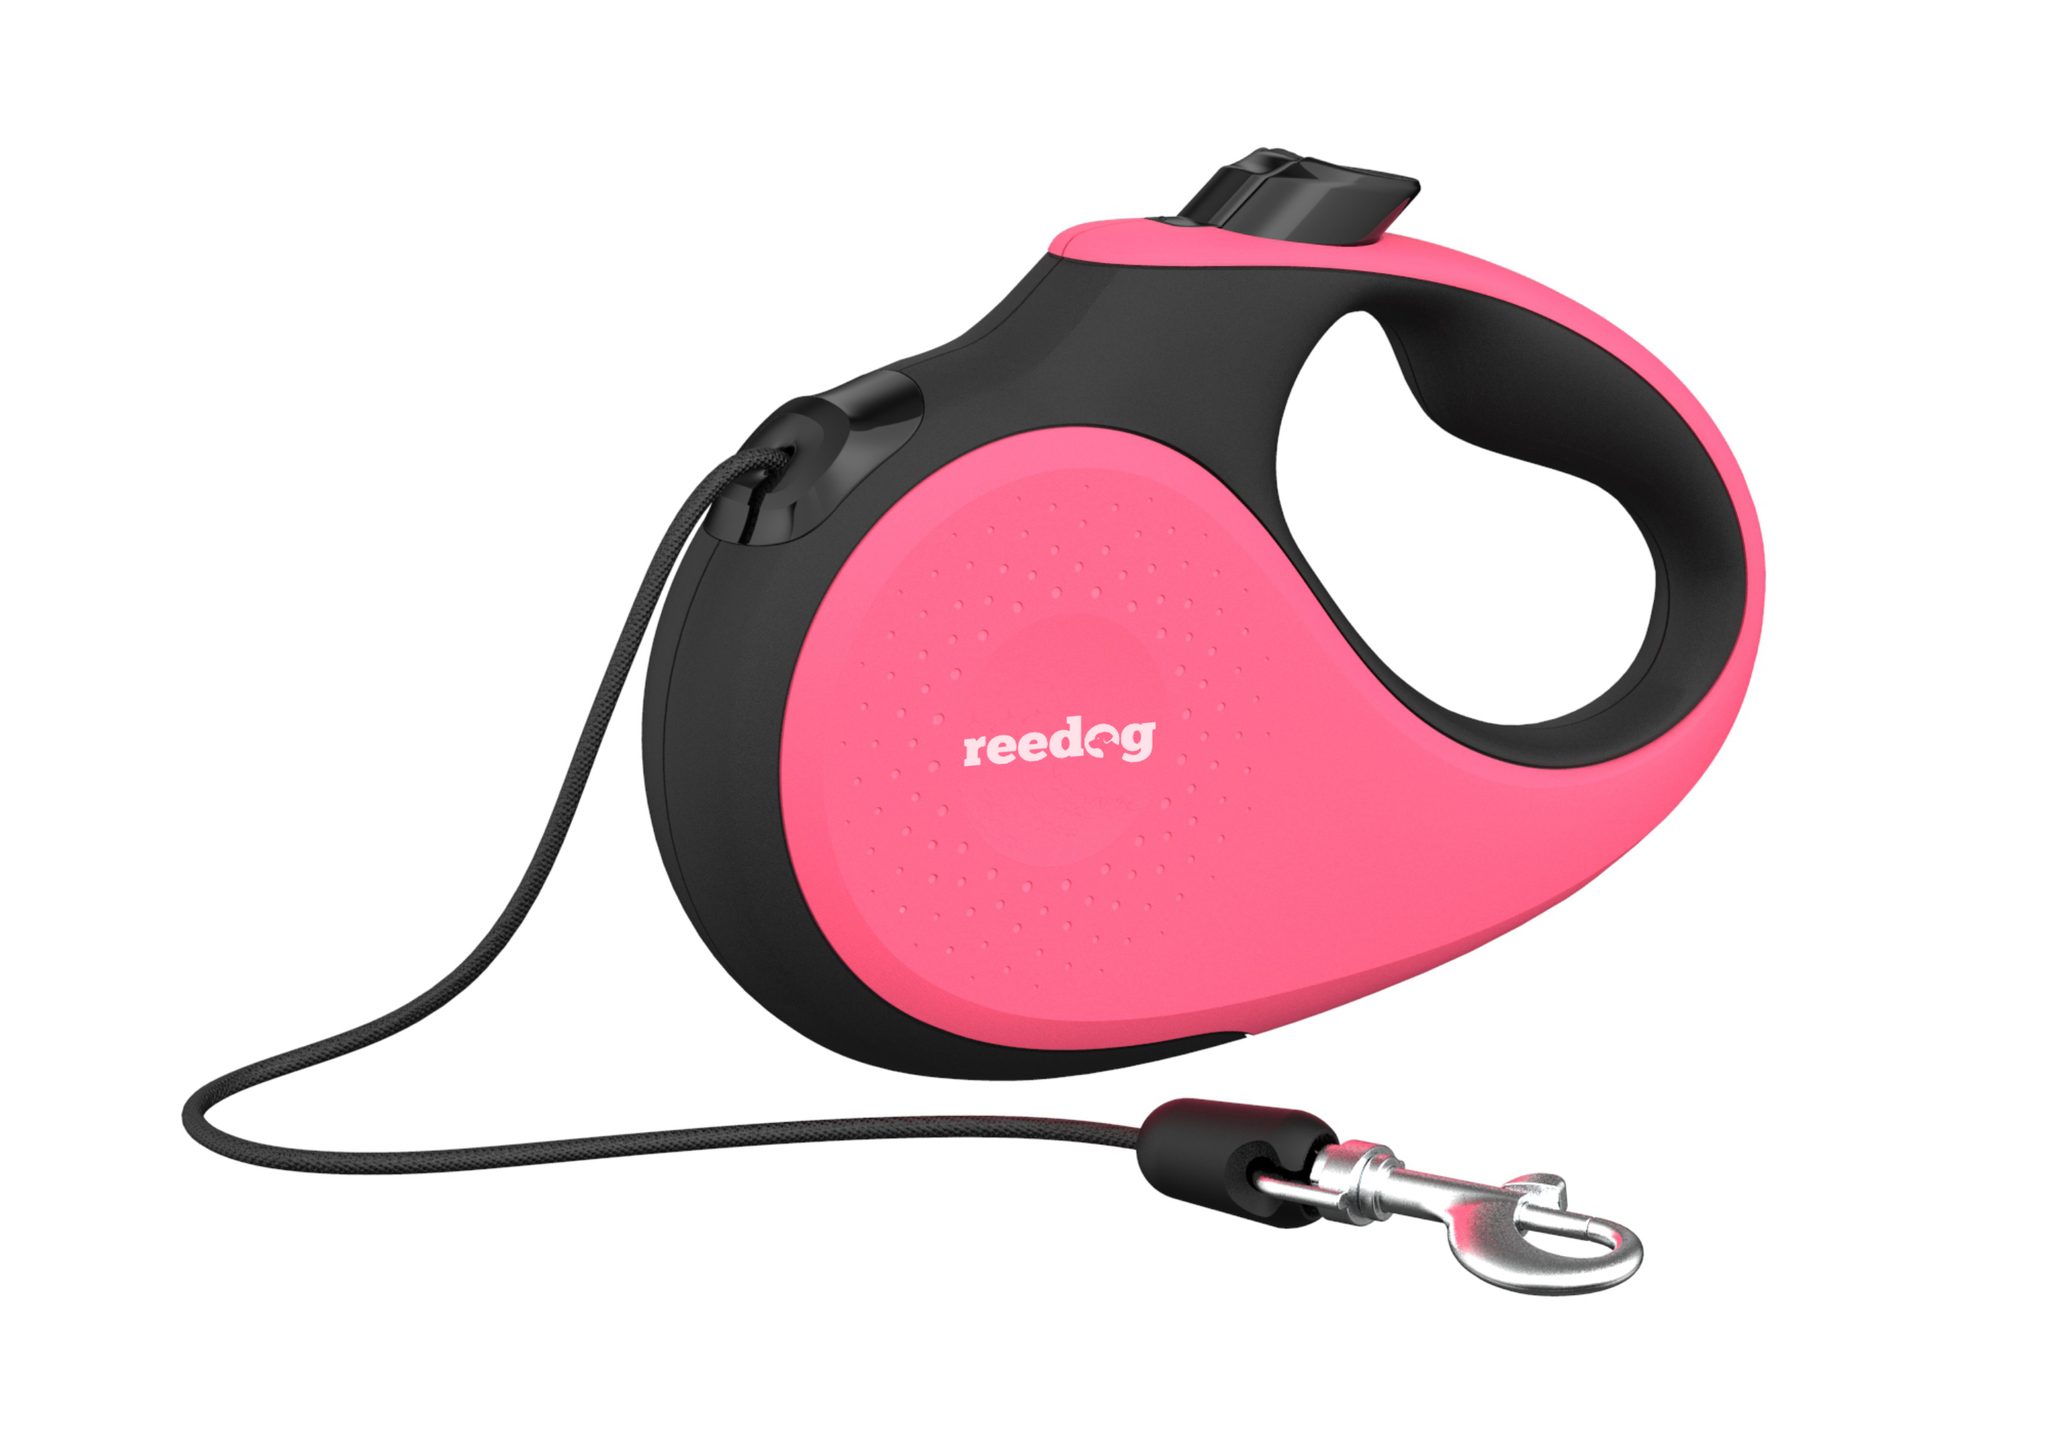 Reedog Senza Premium samonavíjecí vodítko S 12kg / 5m lanko / růžové